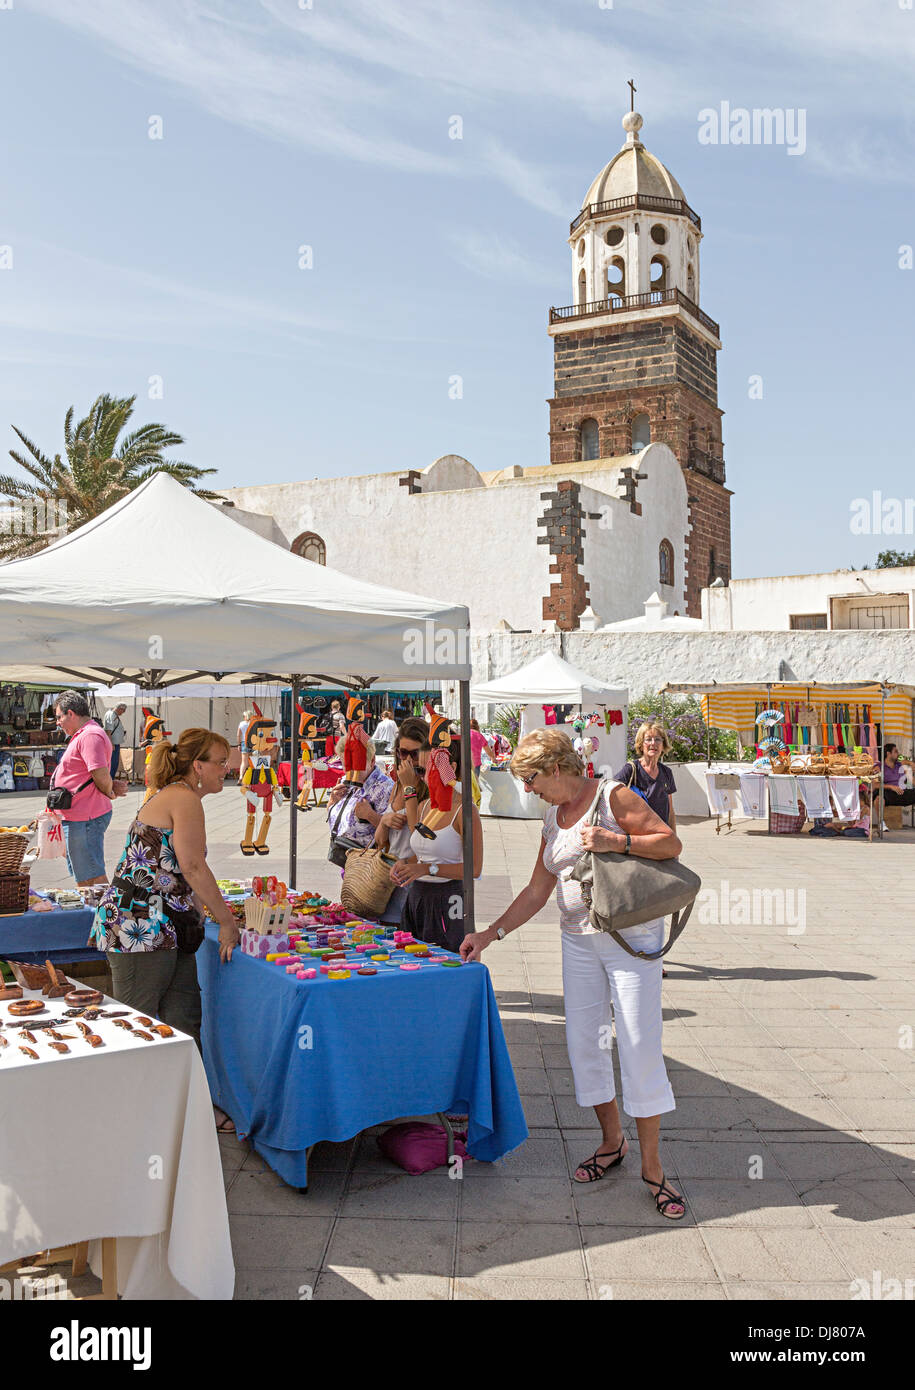 Les gens du shopping au marché le dimanche, Teguise, Lanzarote, îles Canaries, Espagne Banque D'Images